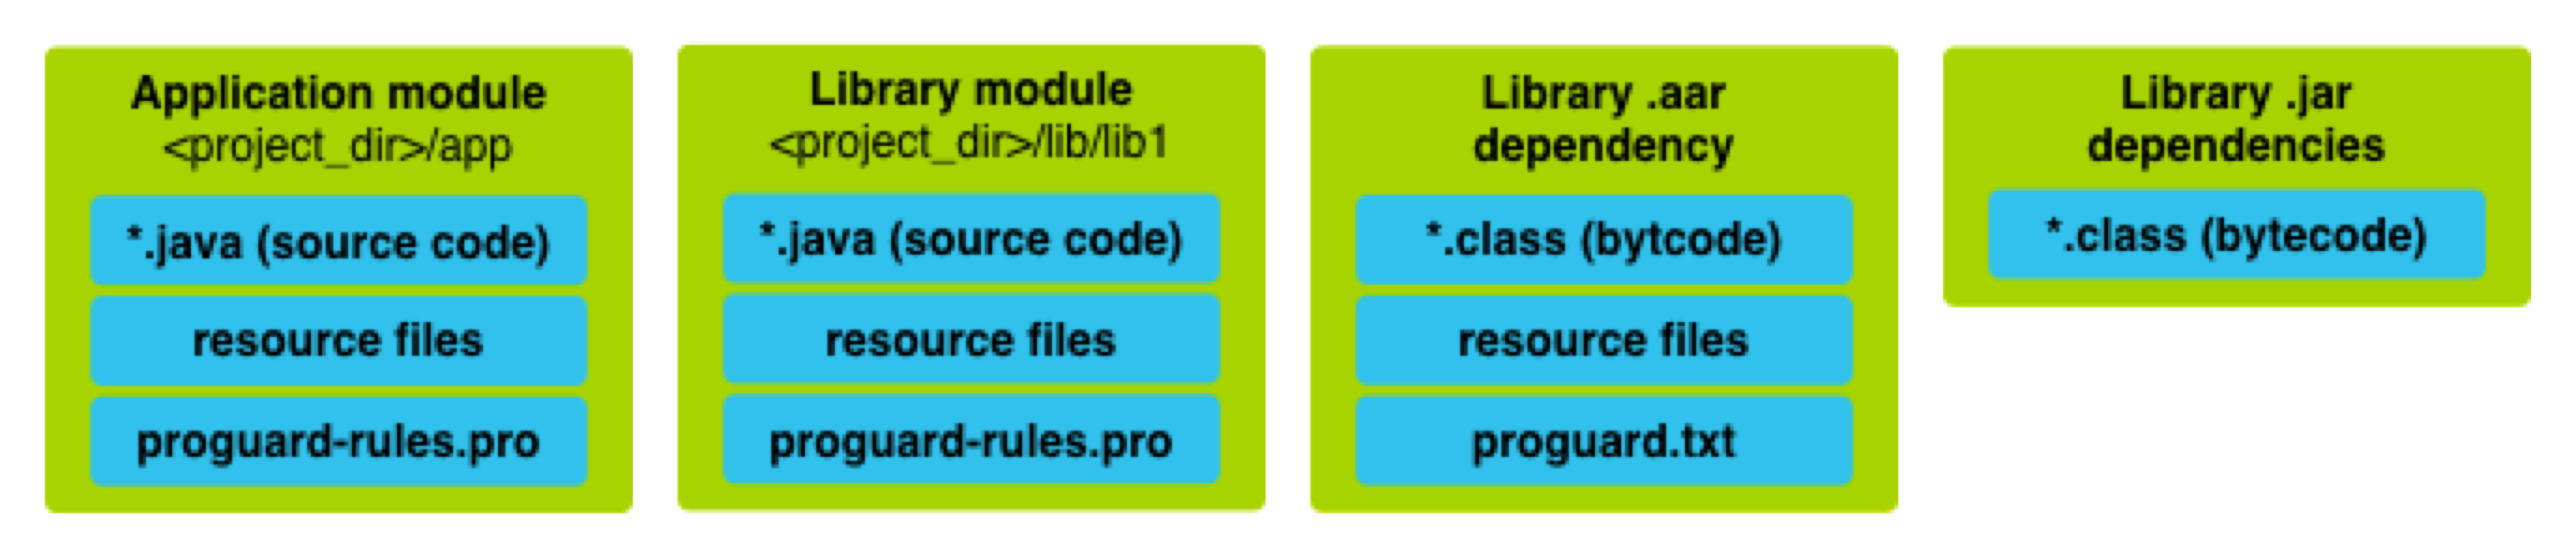 App module, library module, .aar and .jar dependencies